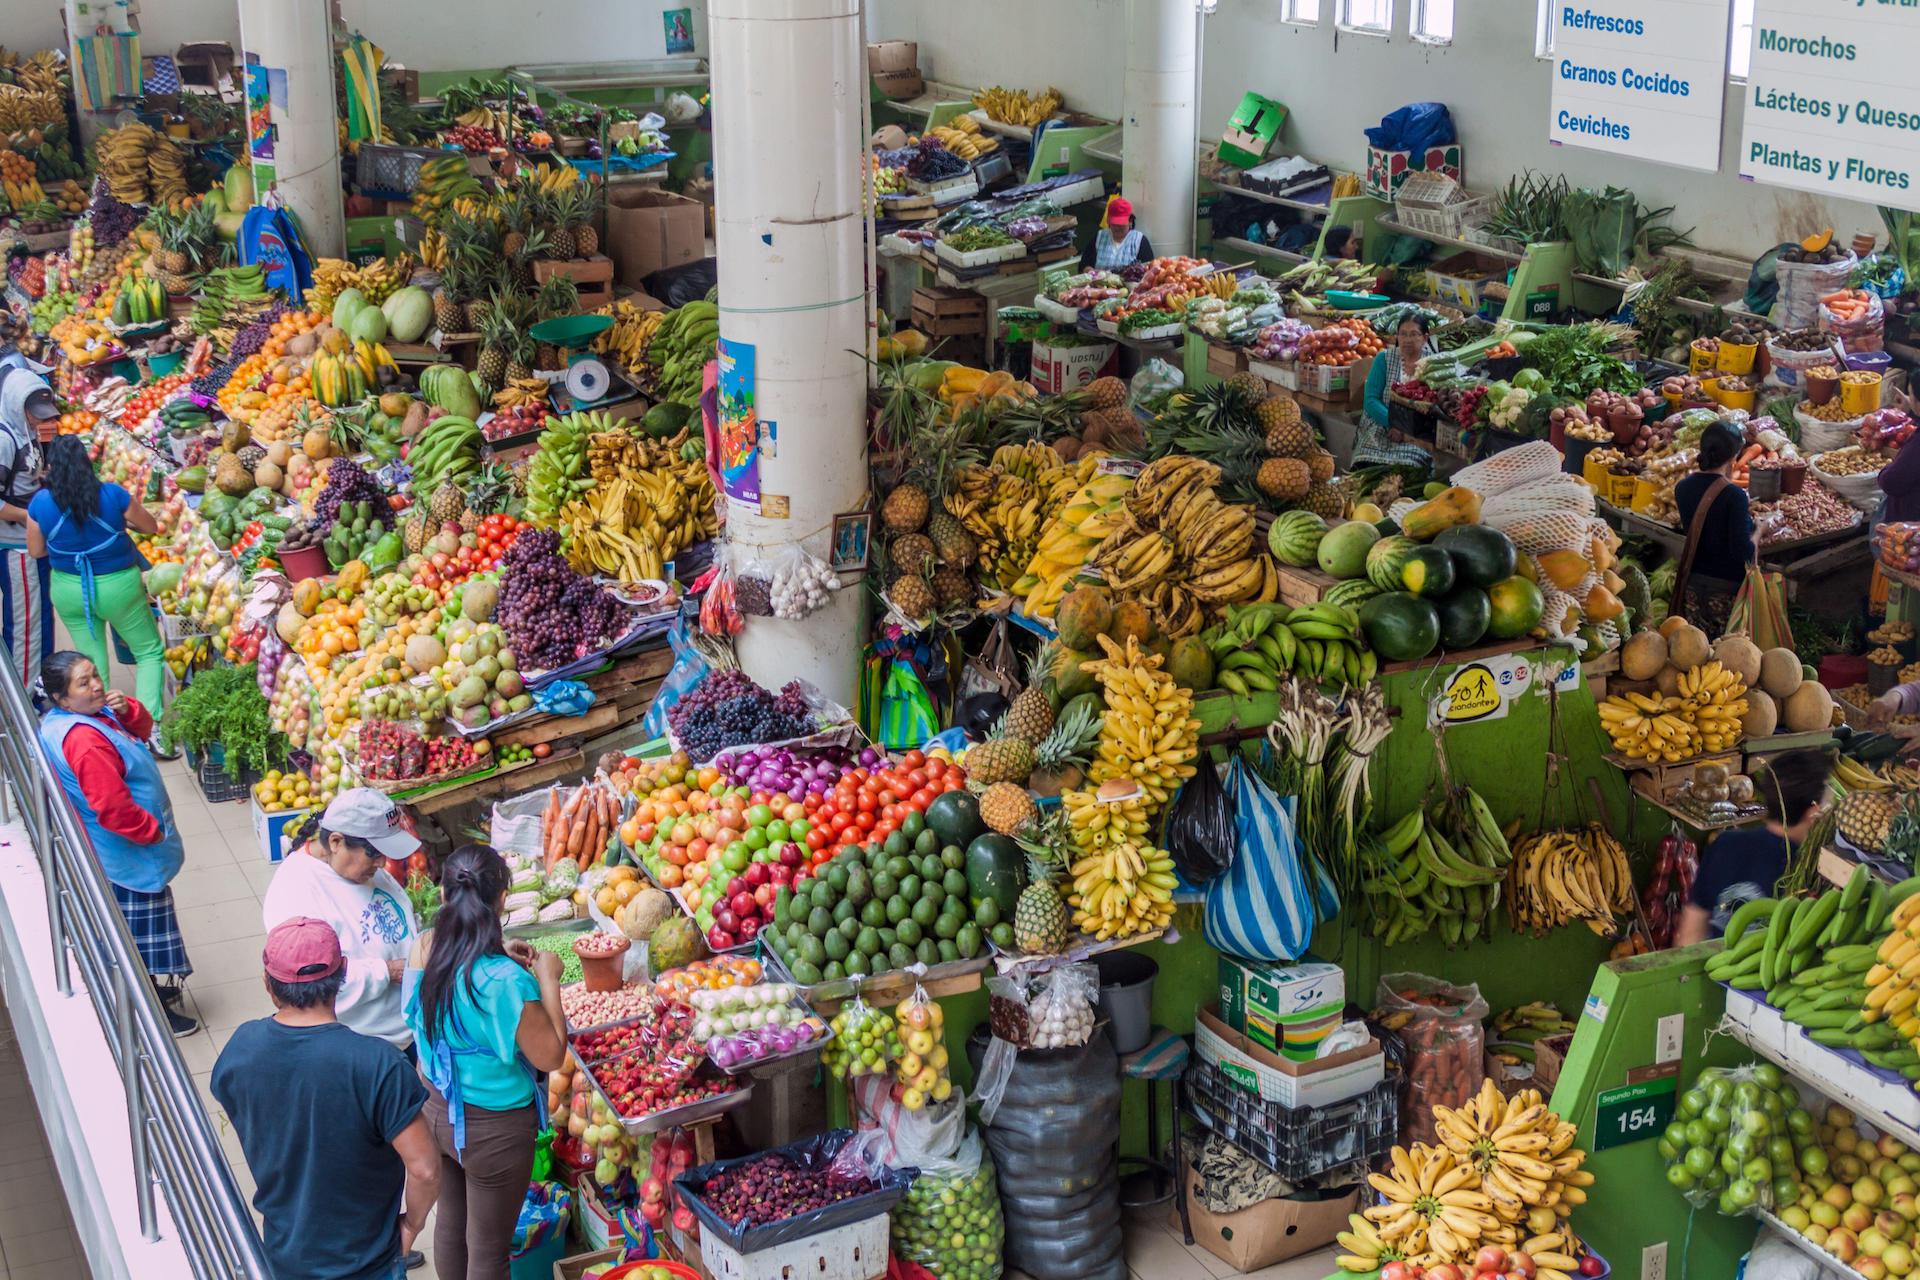 <p>Un puesto de fruta en un mercado callejero de Ecuador. La Cumbre de Sistemas Alimentarios de la ONU pretende acelerar una transformación positiva del sistema alimentario mundial, pero las diferentes tensiones pueden dificultar la consecución del objetivo. (Imagen: Kseniya Ragozina / Alamy)</p>